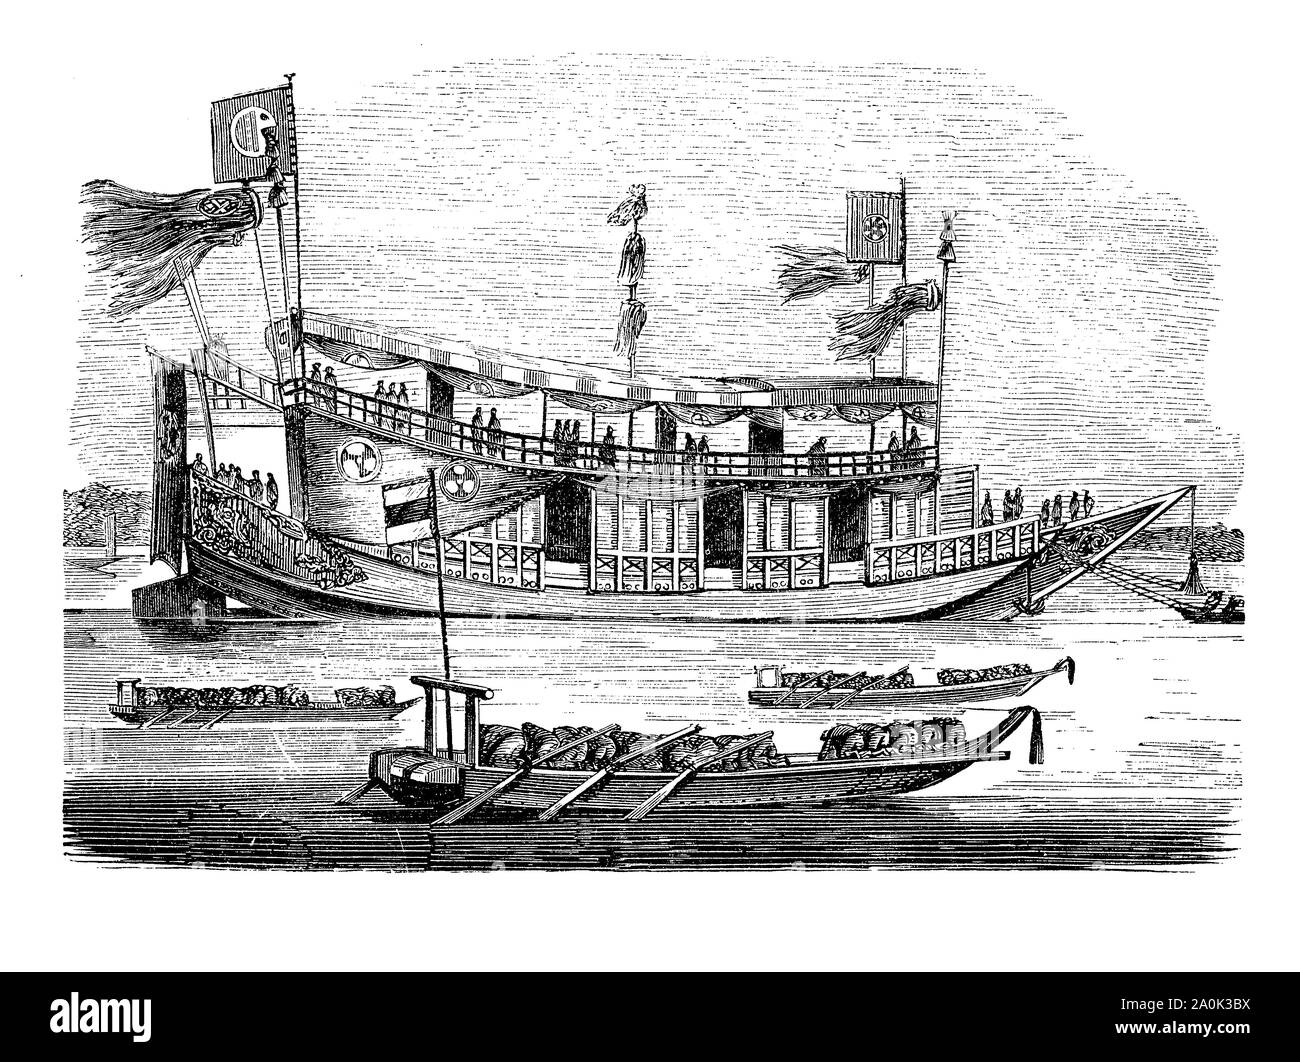 Shogun, Schiff aus dem 18. Jahrhundert, der Militärdiktator Japans De-facto-Herrscher des Landes. Das Schiff war mehr ein schwimmenden Festung denn als echtes Kriegsschiff in den Küstengebieten Aktionen verwendet Stockfoto